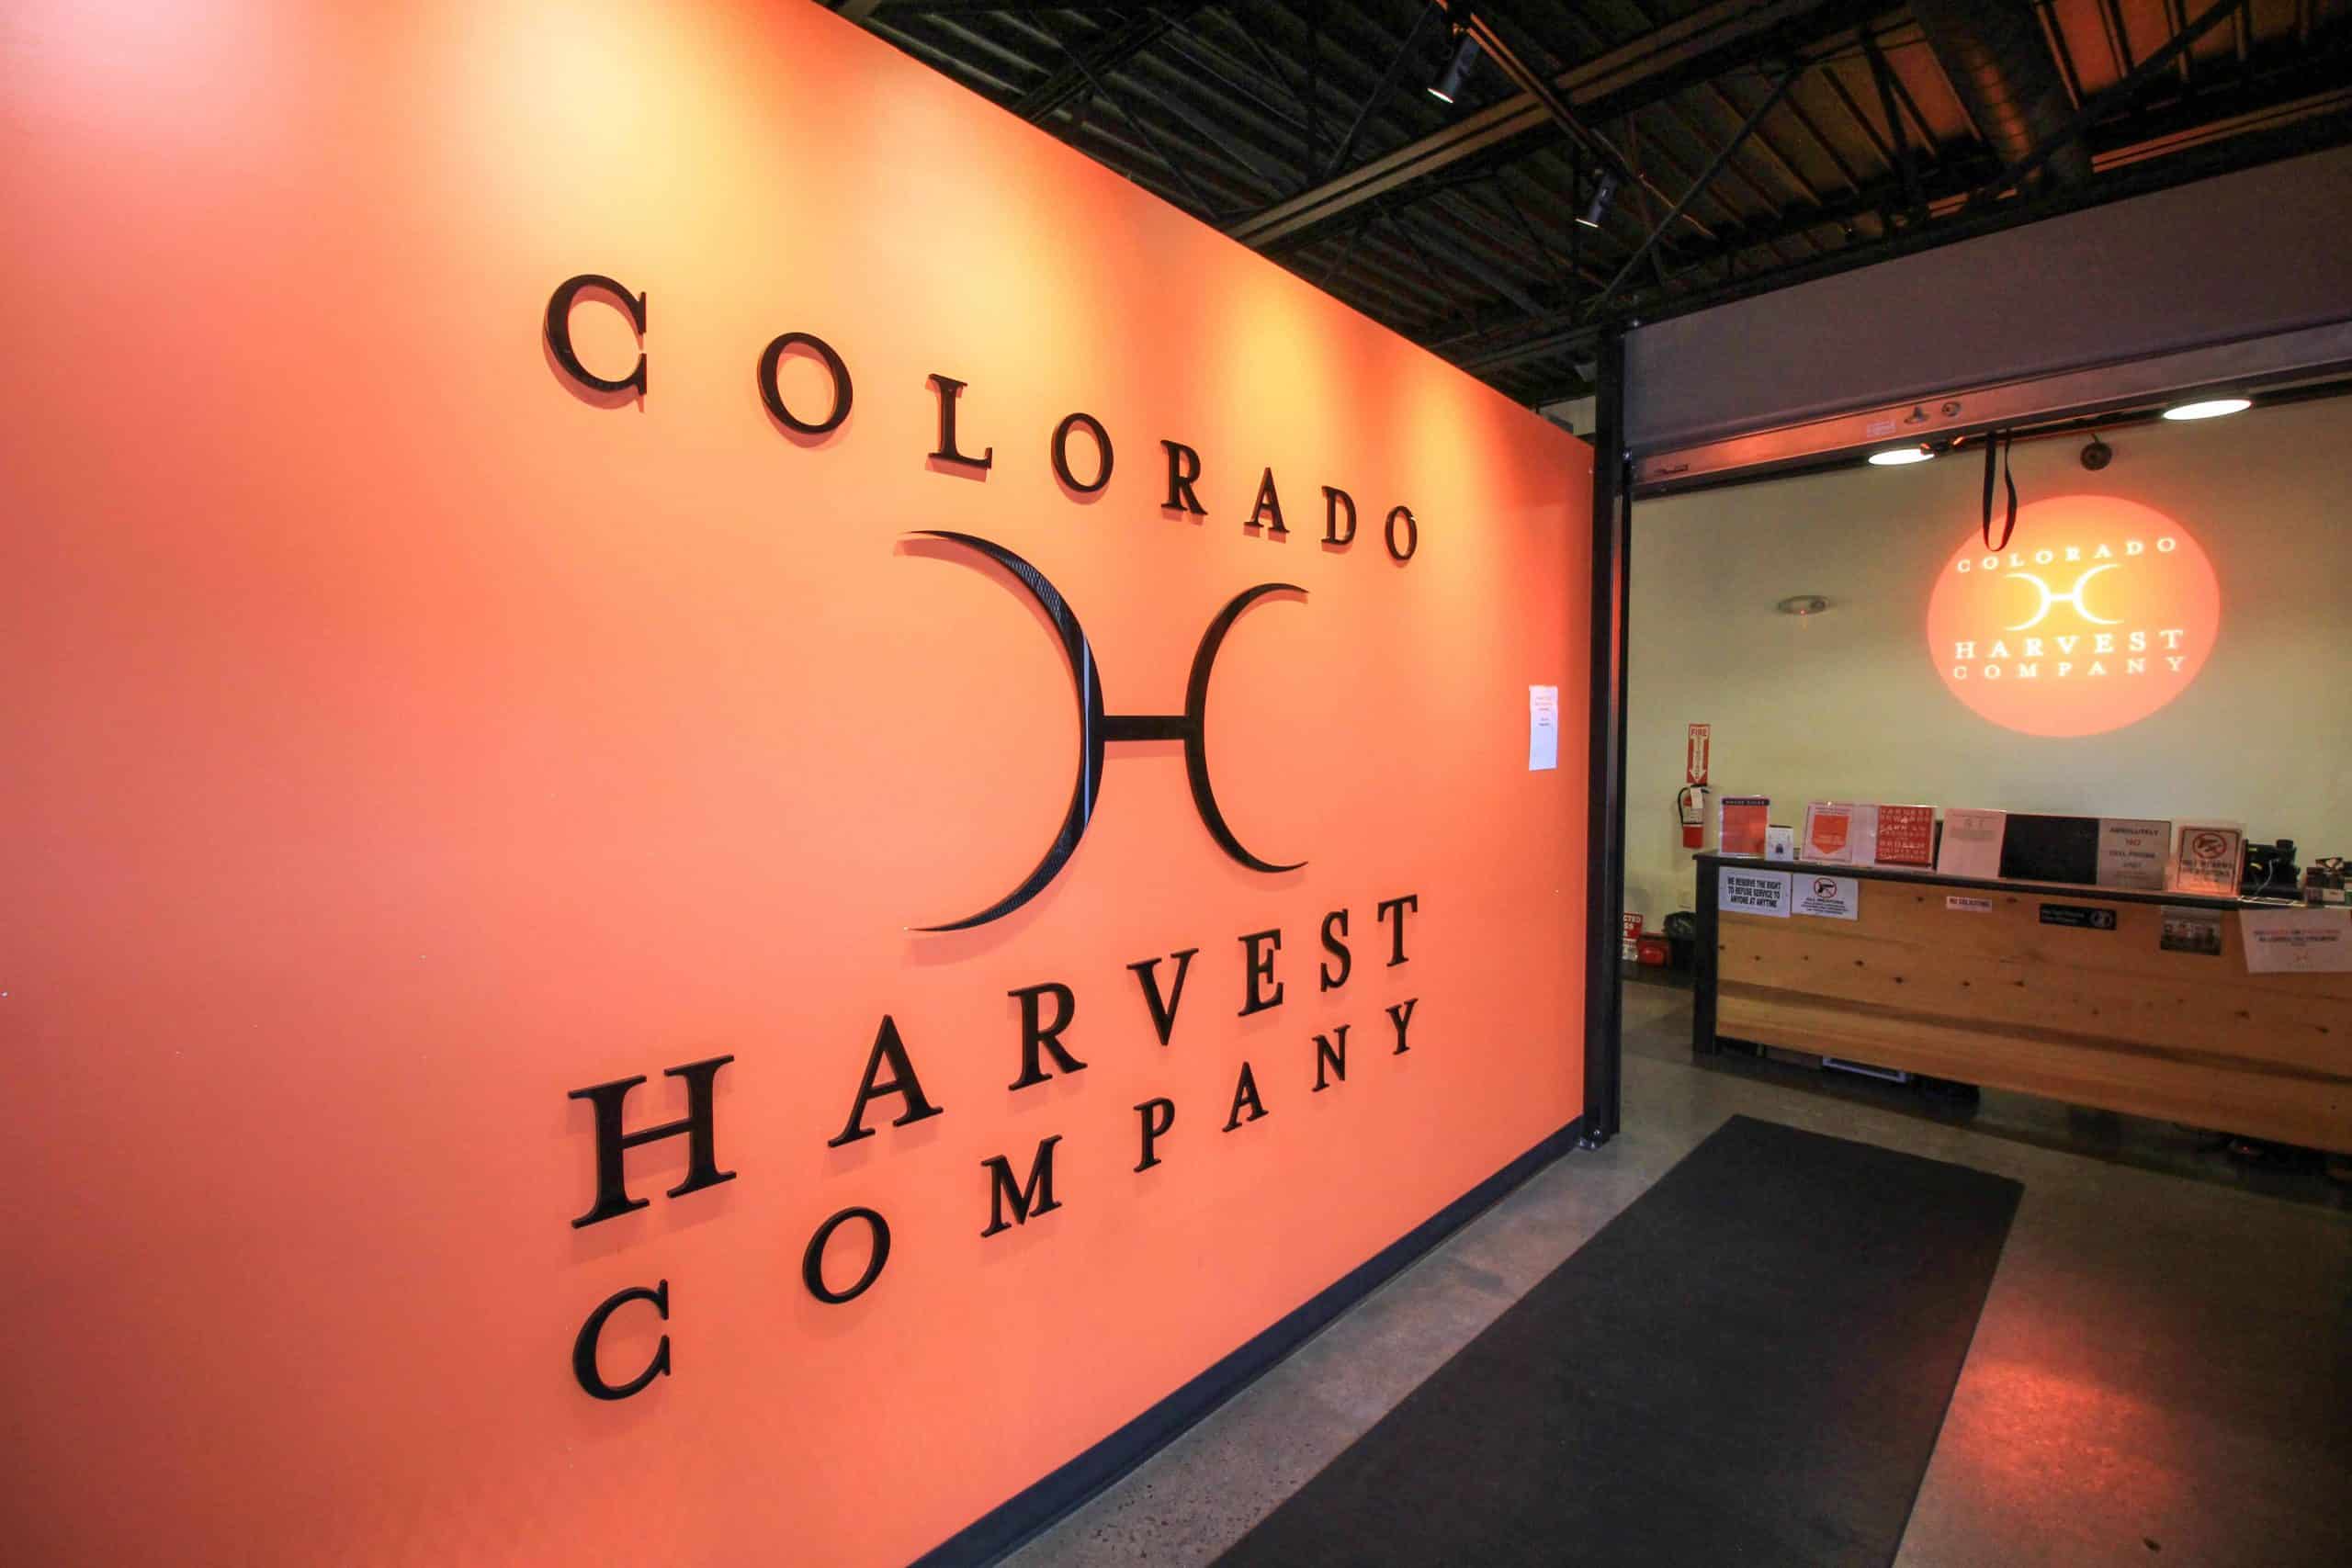 colorado harvest company reviews